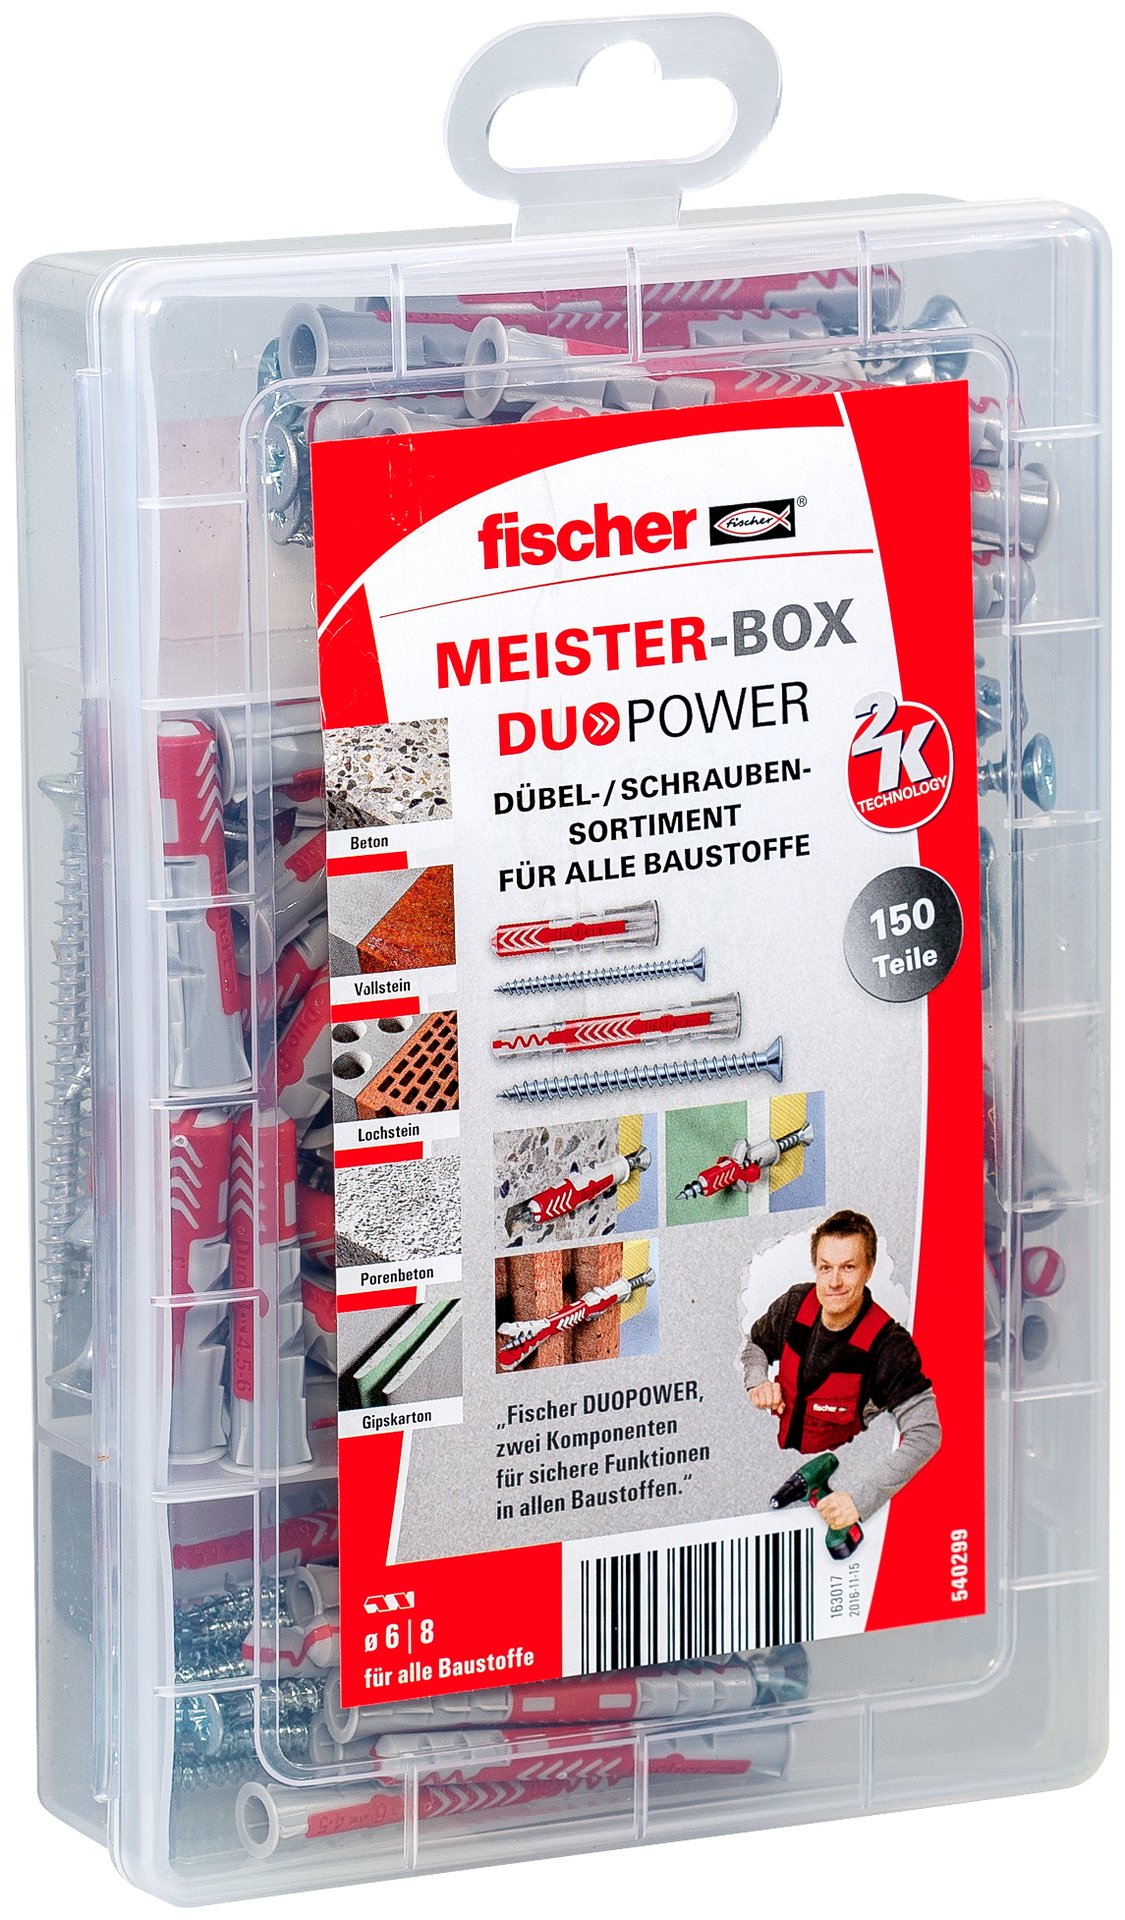 Fischer MeisterBox DuoPower Sortimentsbox